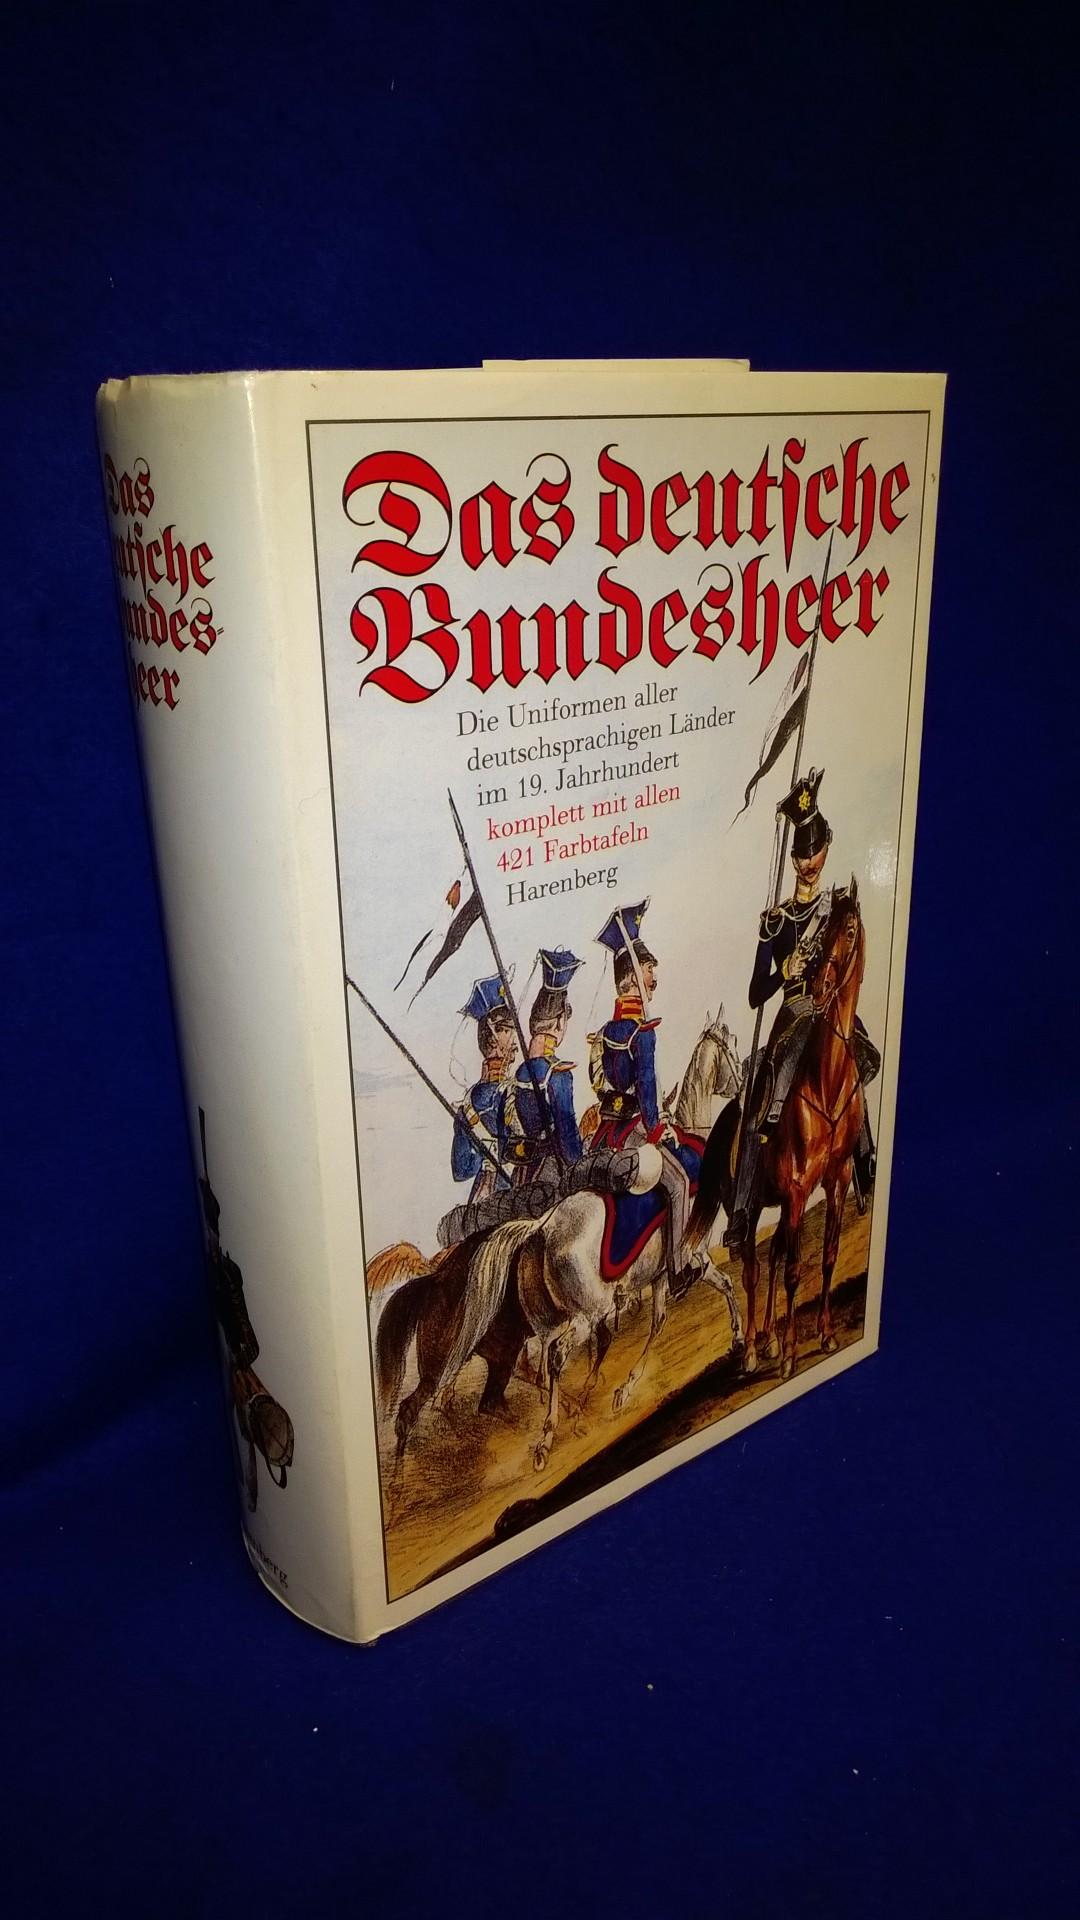 Das deutsche Bundesheer. Nach dem Uniformwerk aus den Jahren 1835 bis 1843. 